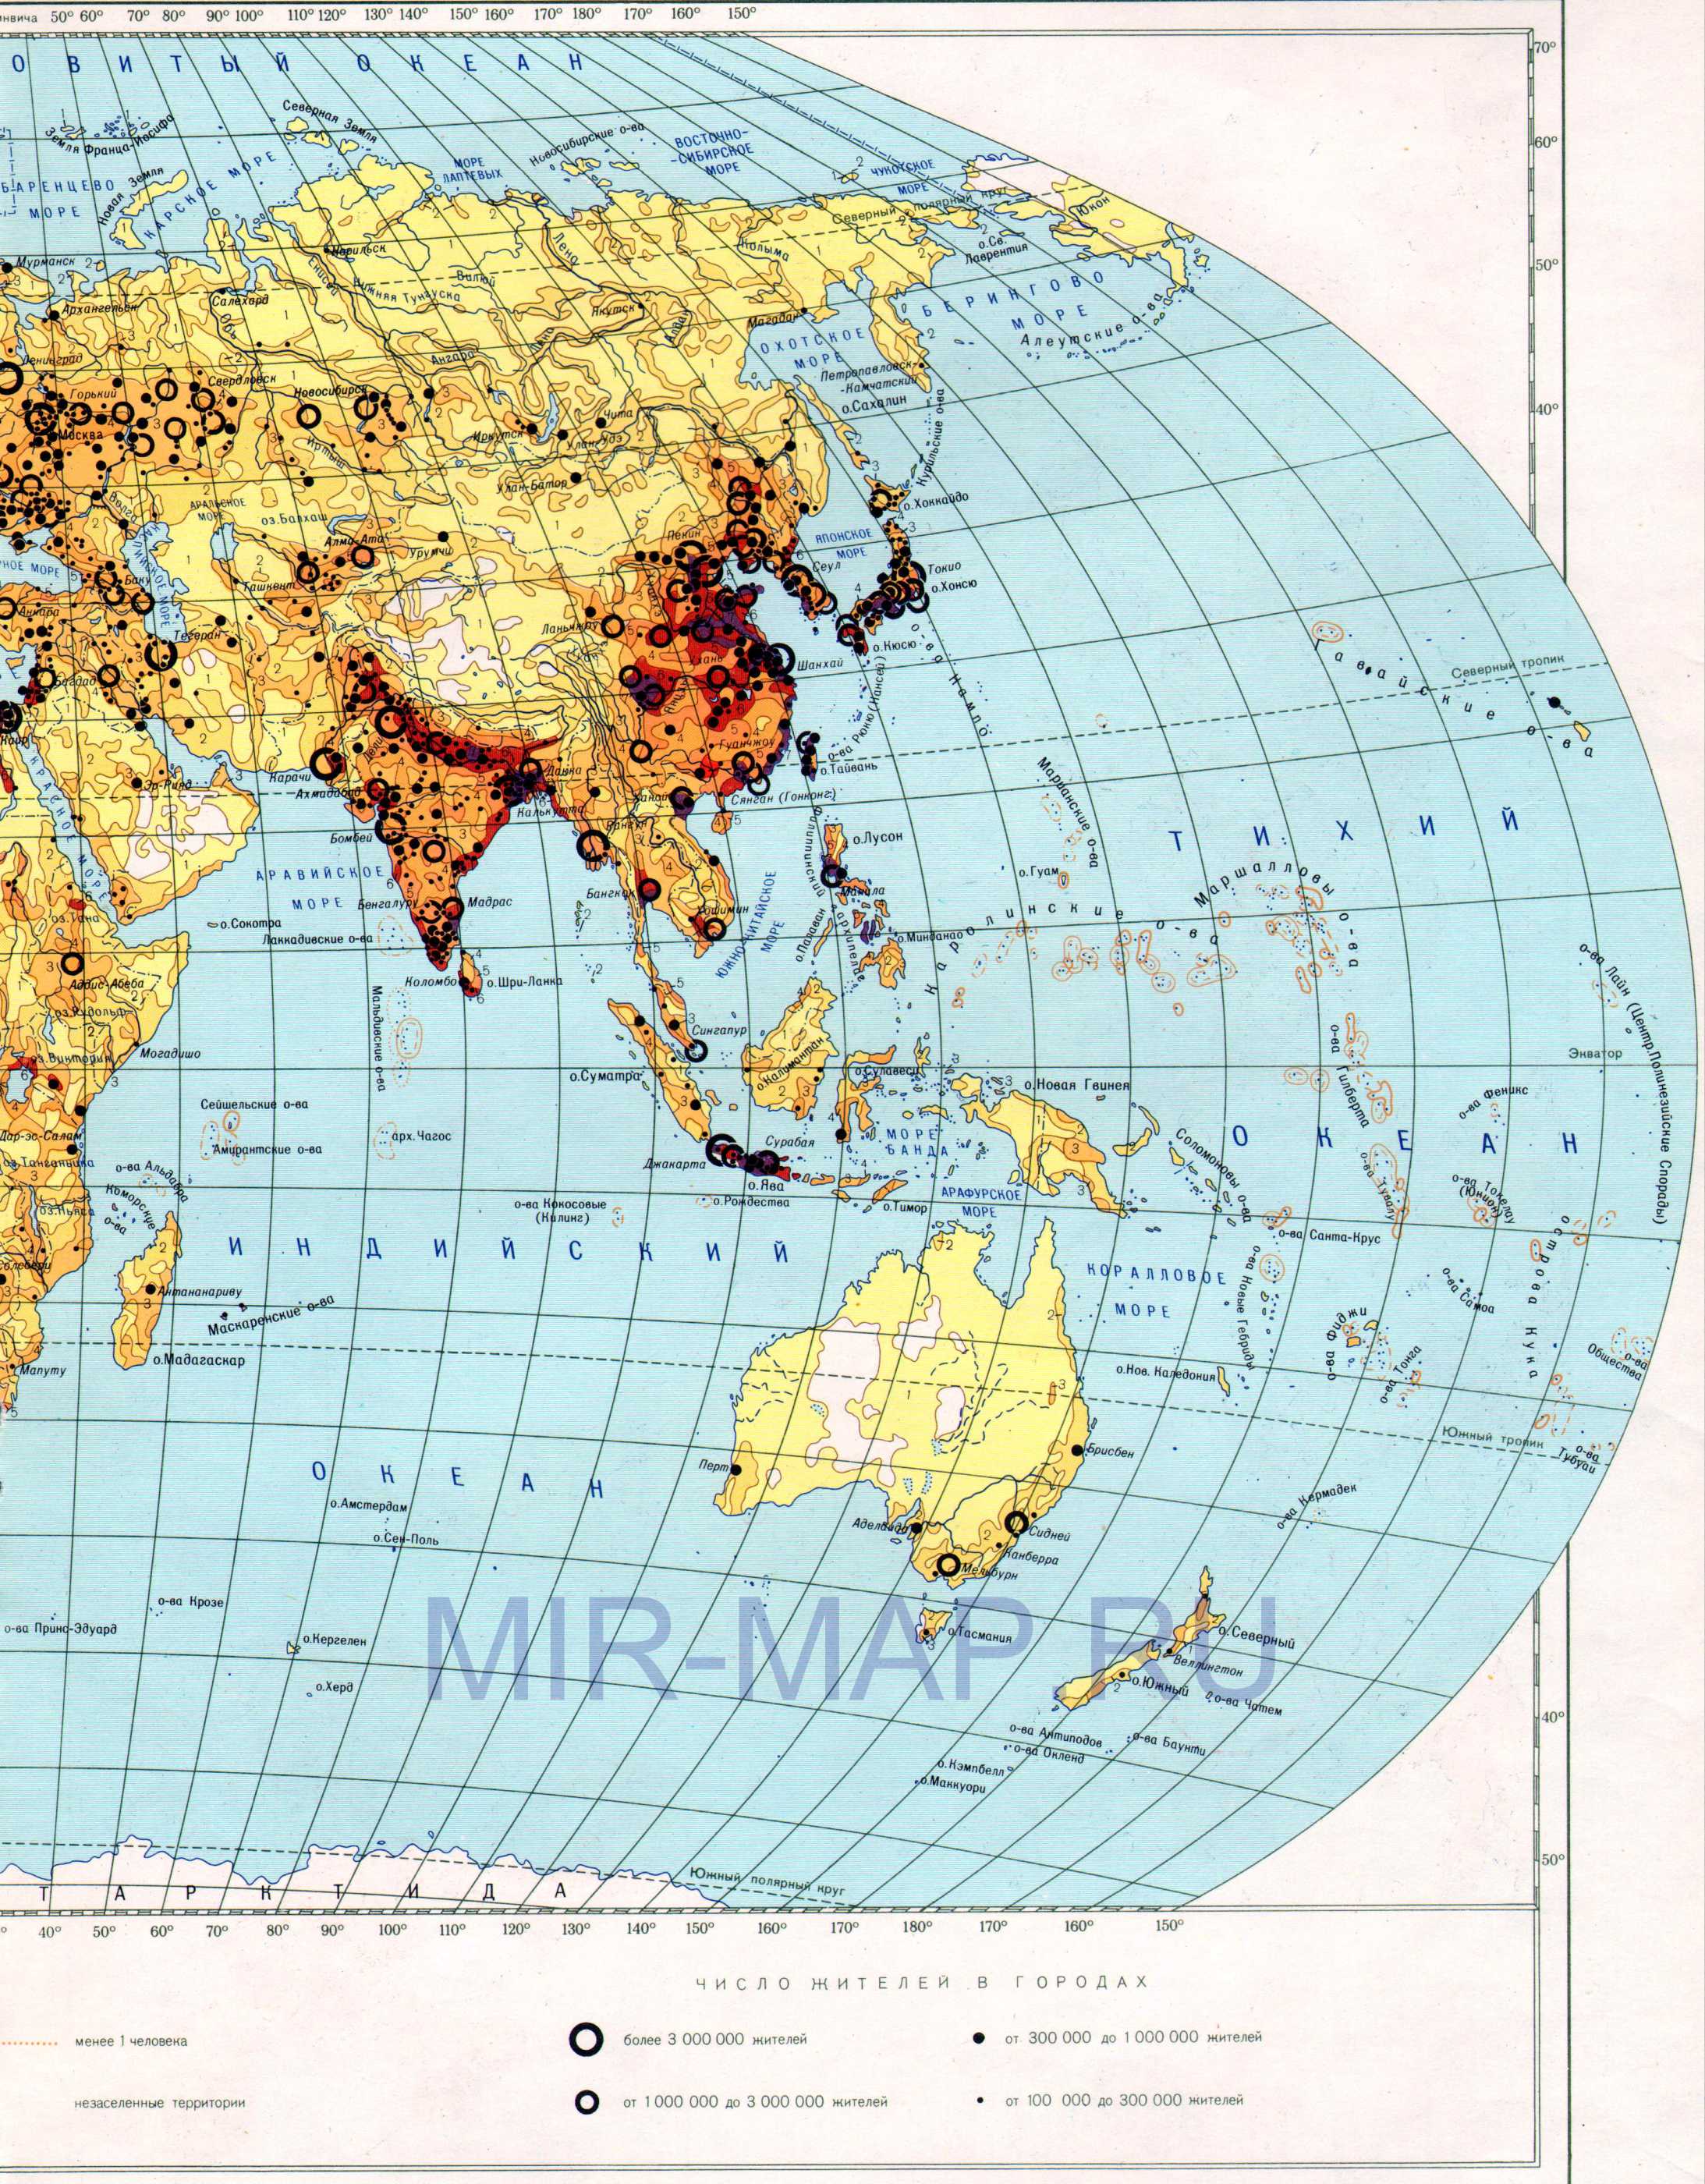 Карта плотности населения на земном шаре. Карта мира масштаба 1см:750км -плотность населения, B0 -